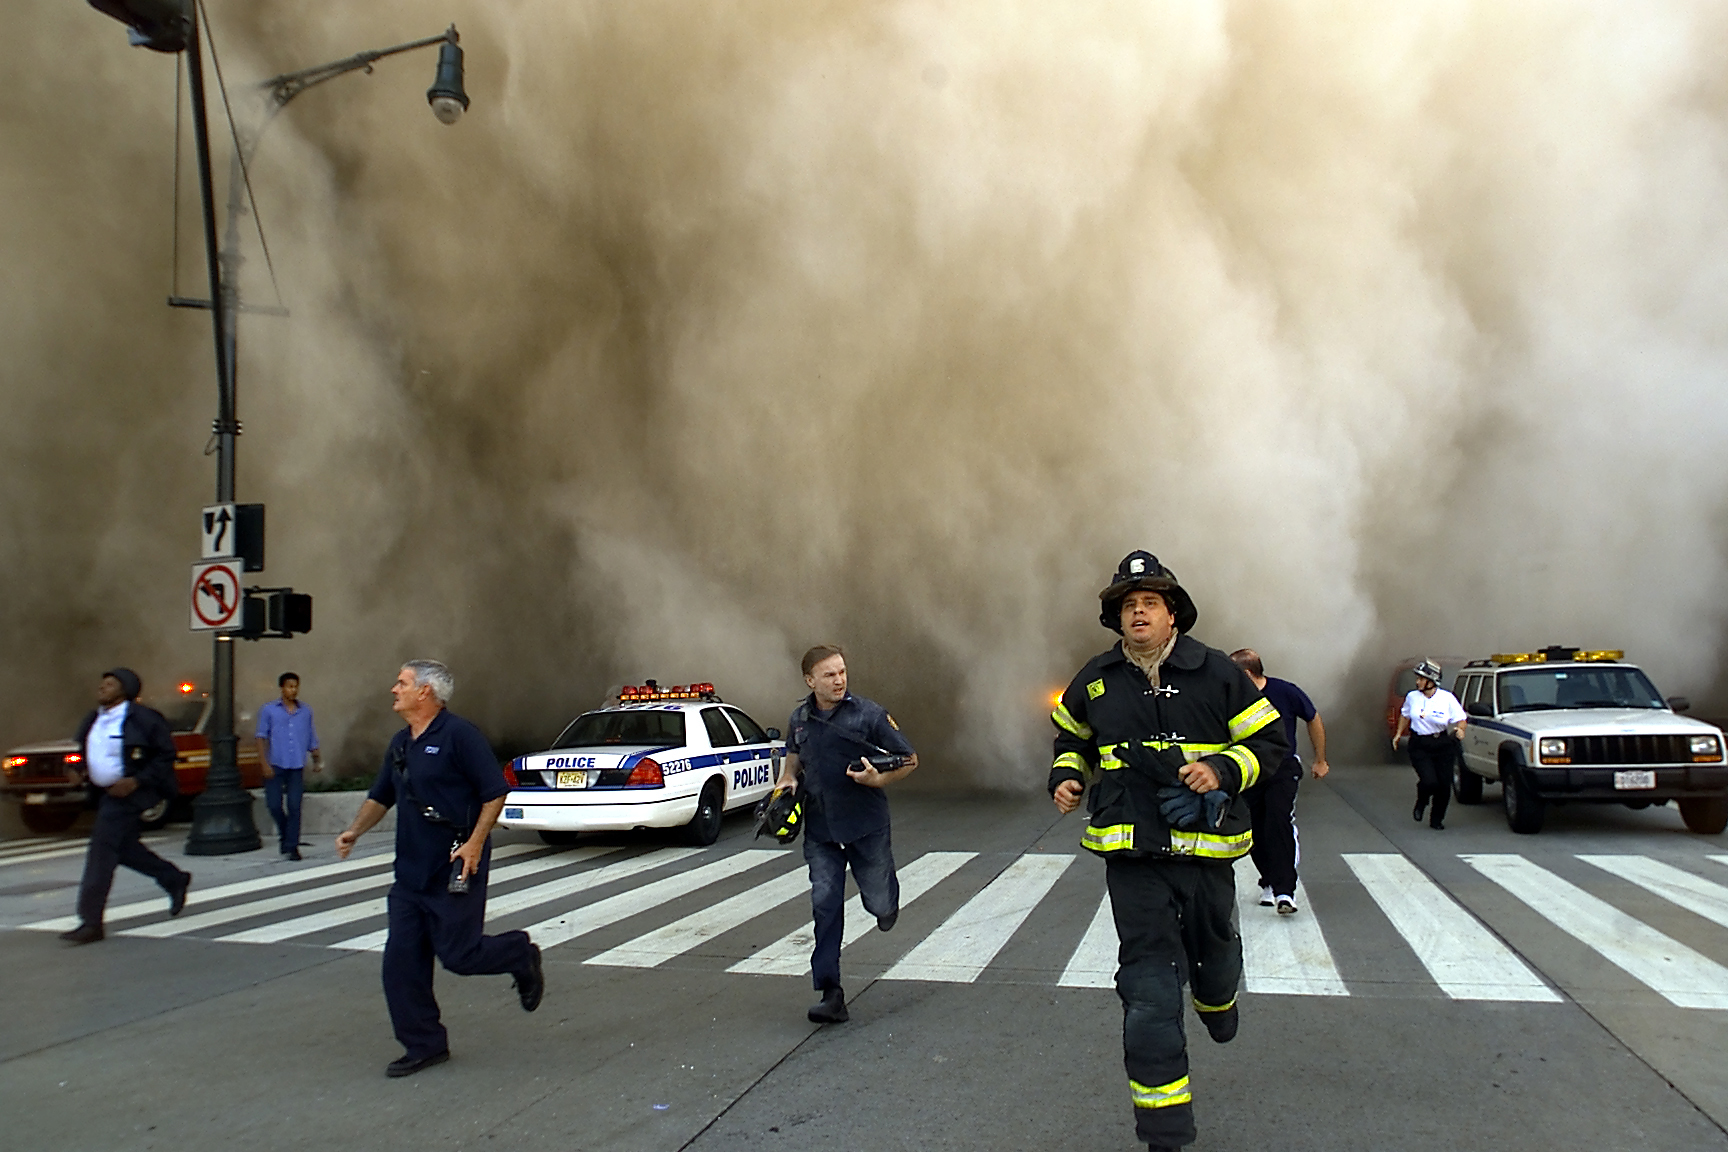 Когда был теракт башни близнецы. Башни-Близнецы 11 сентября 2001. Теракт 11 сентября 2001 года башни Близнецы.